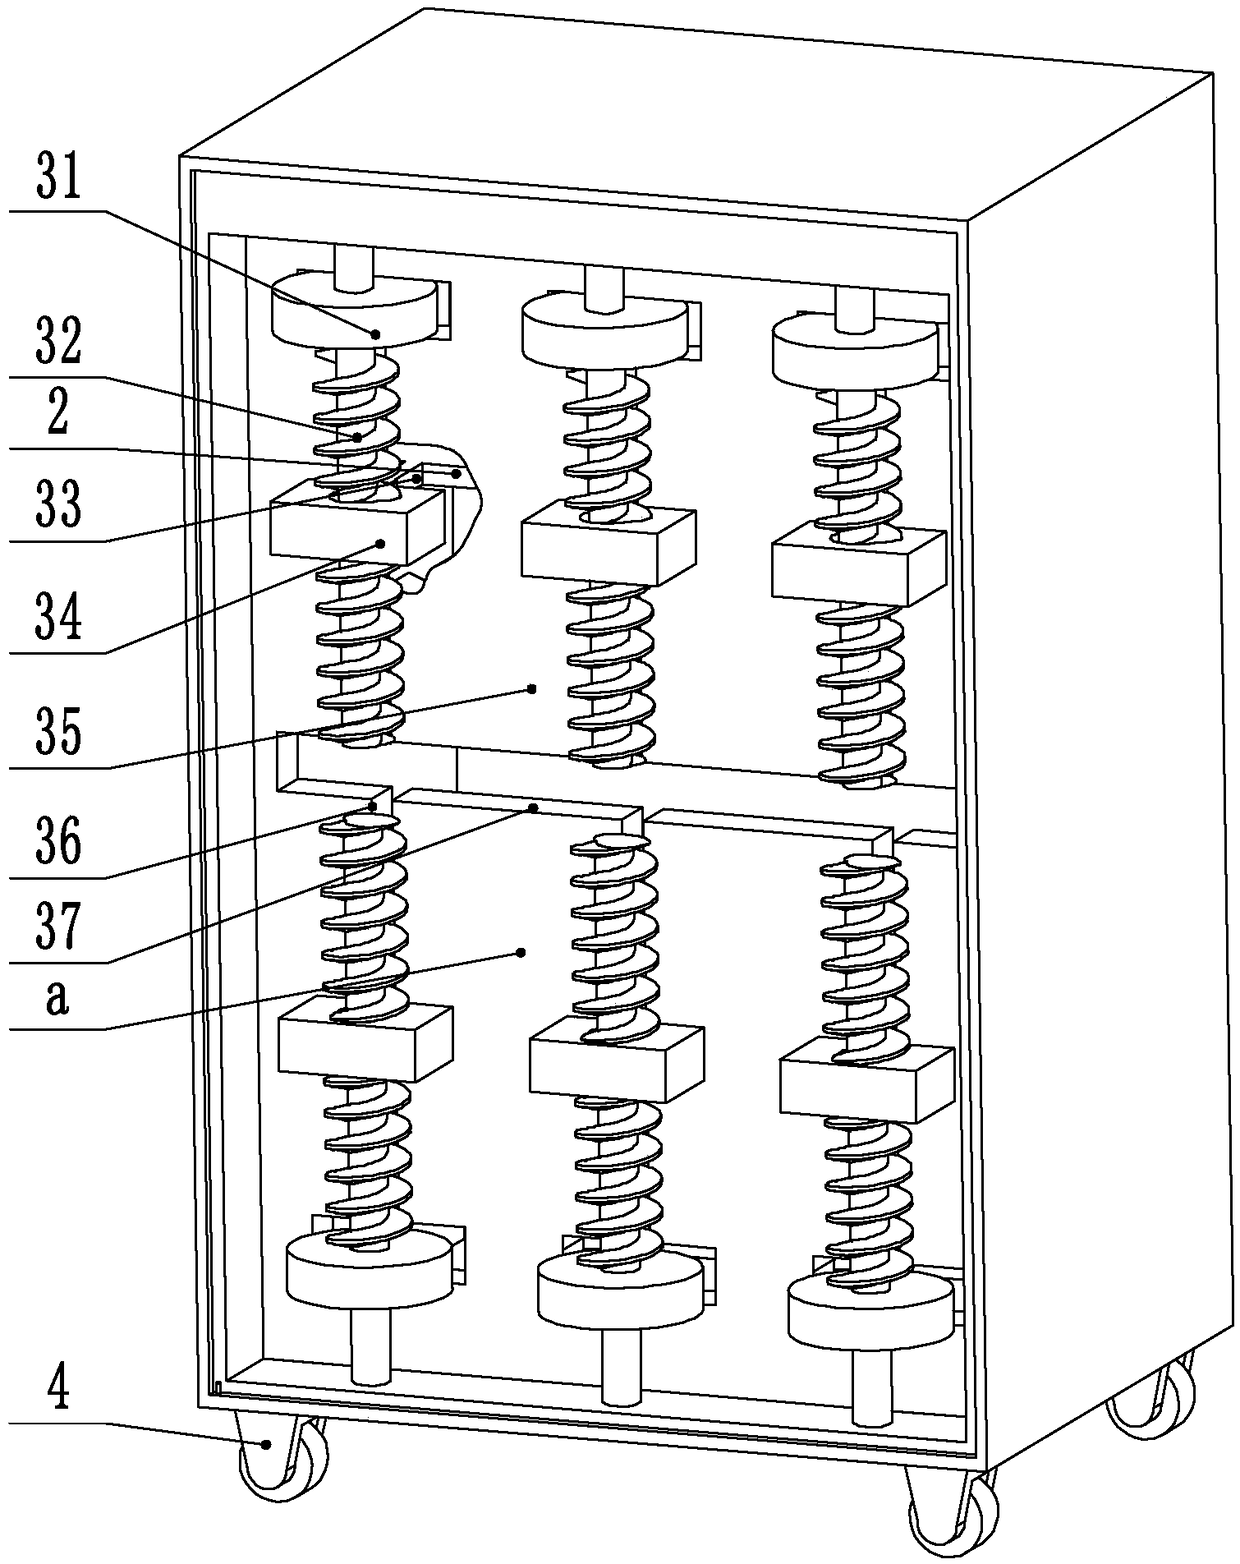 Middle school biological specimen storage cabinet